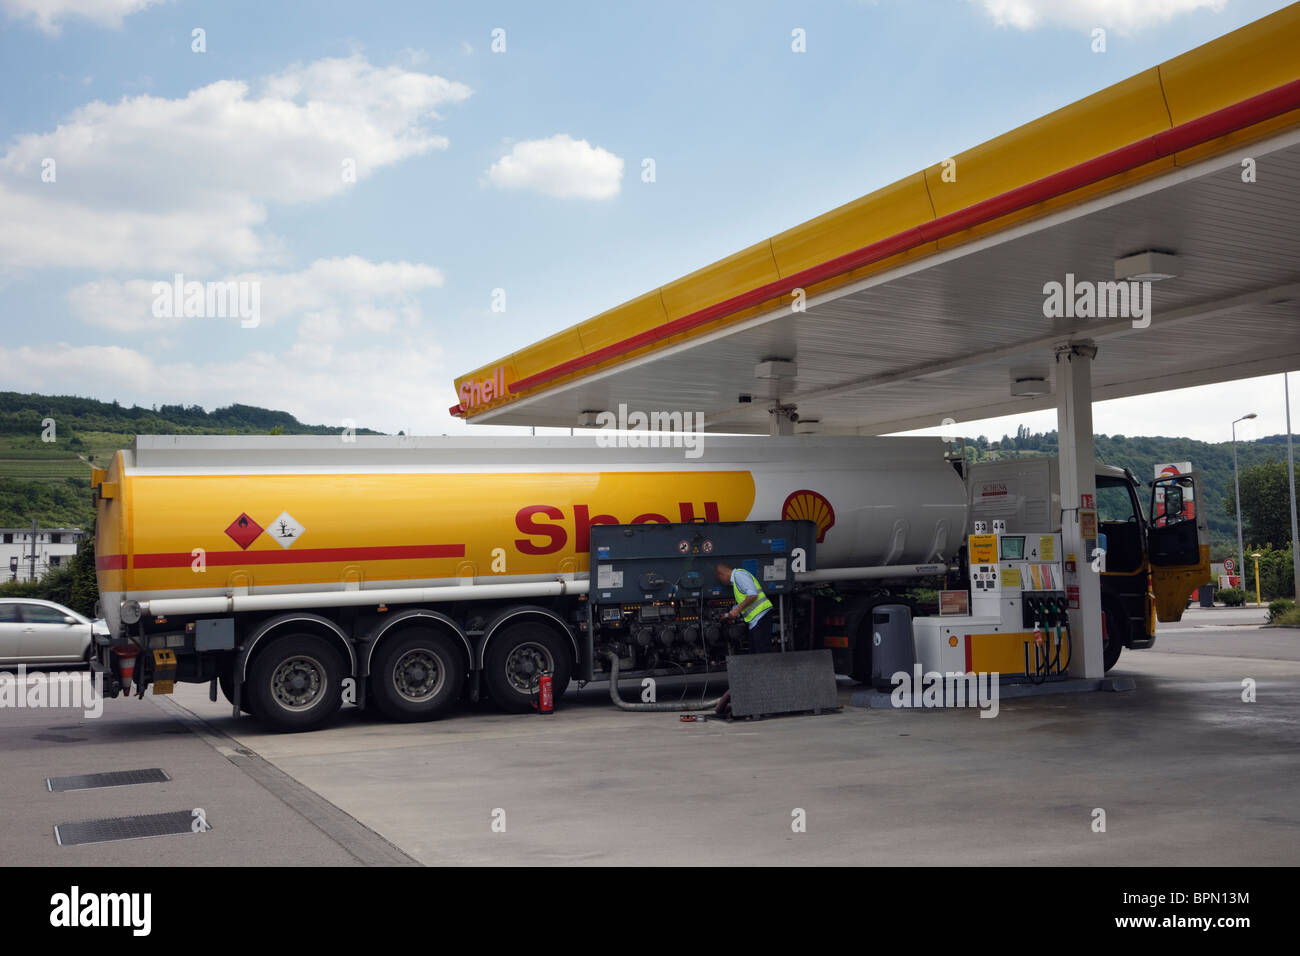 Luxemburg, Europa. Shell Öl-Tanker eine Tankstelle Benzin bereitzustellen Stockfoto